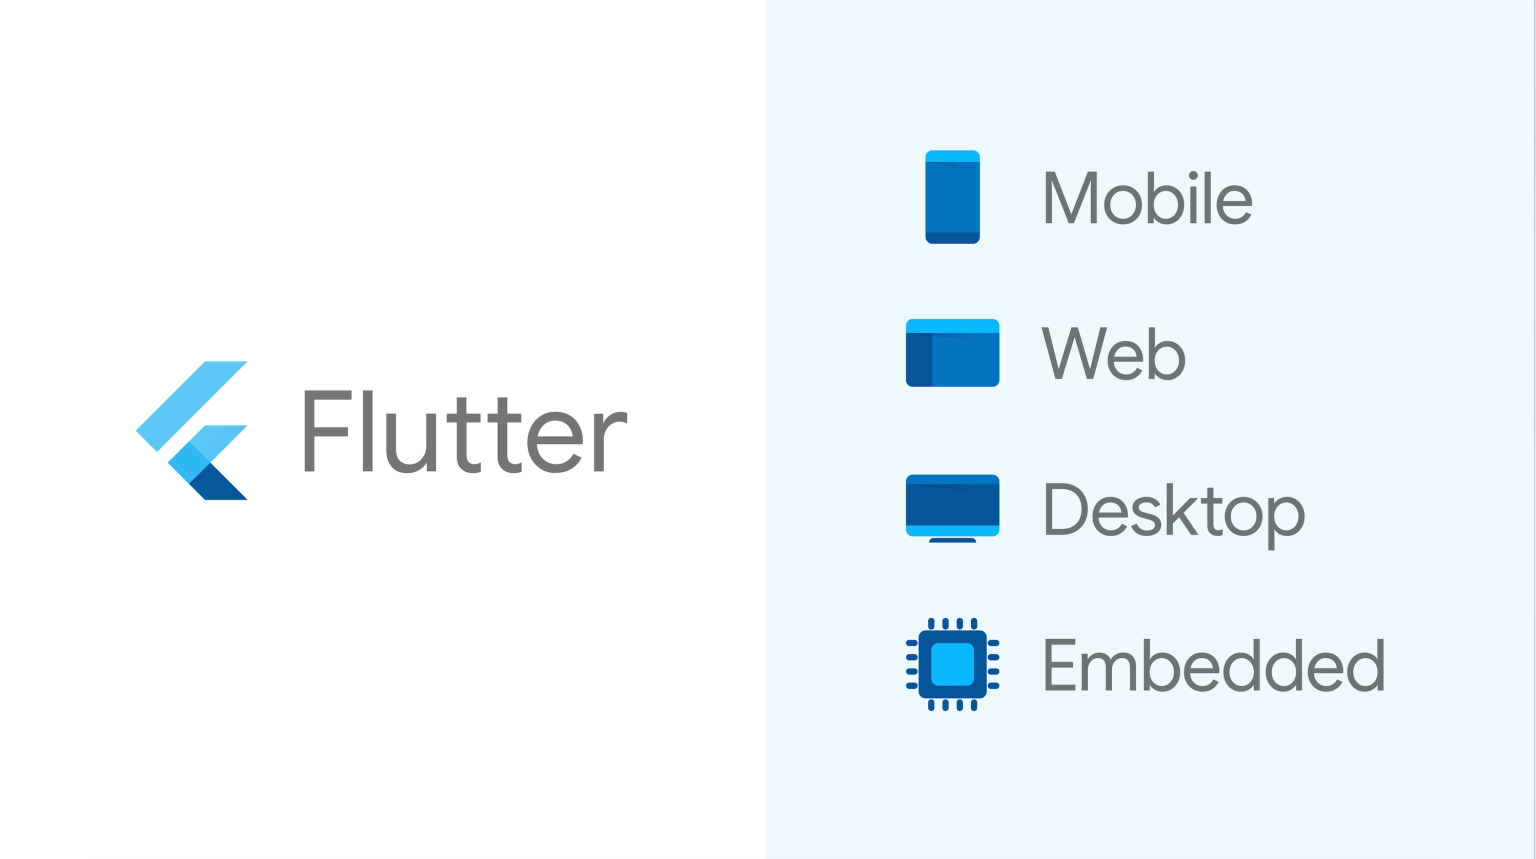 Cross-platform mobile application framework Flutter